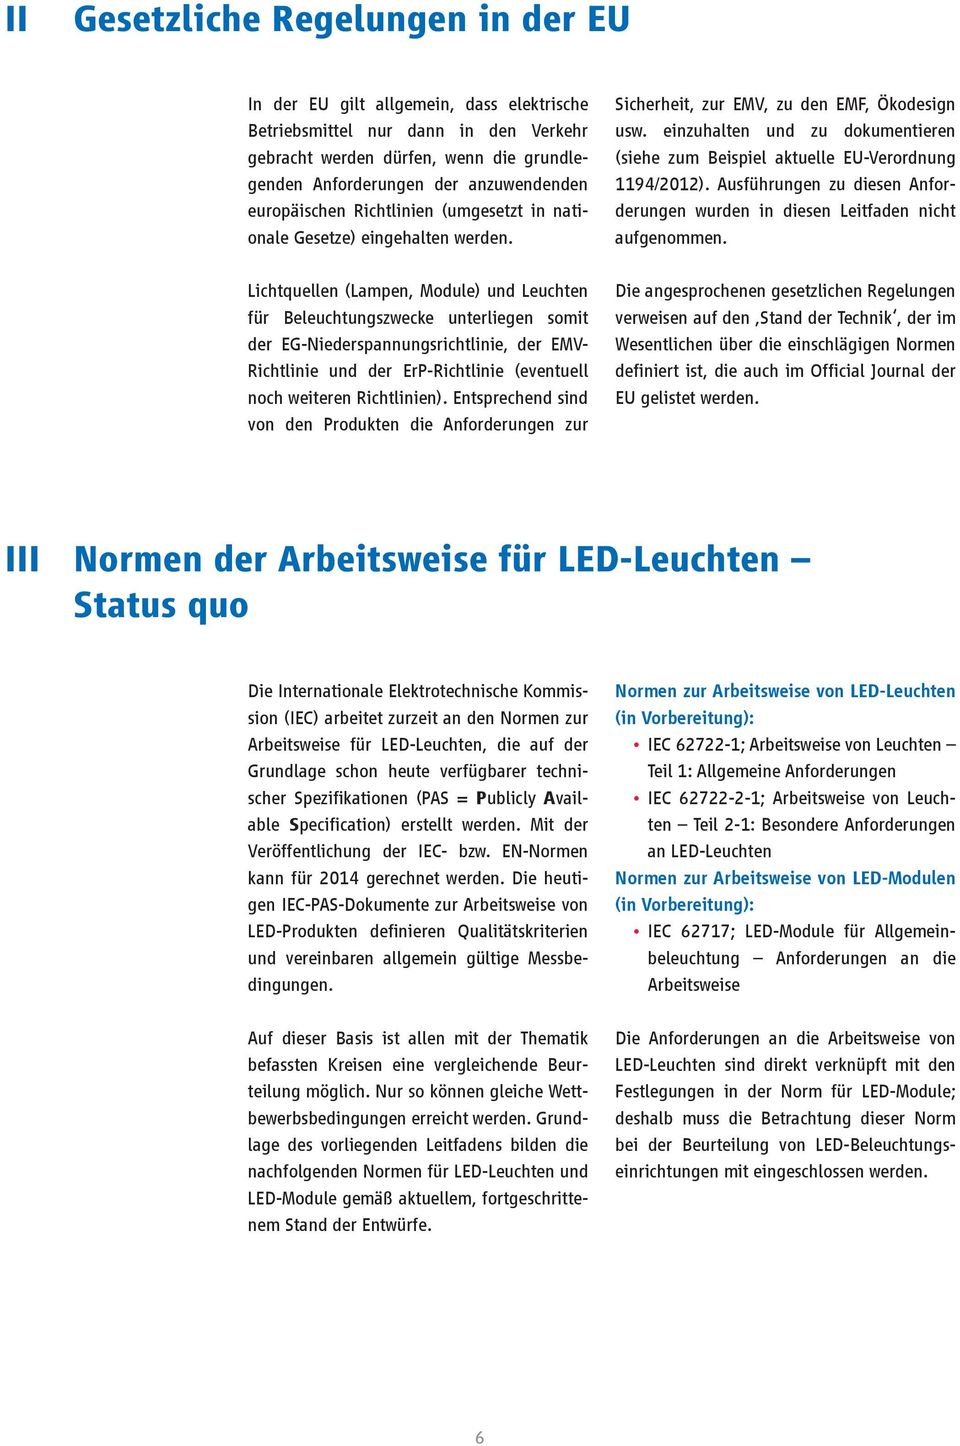 Lichtquellen (Lampen, Module) und Leuchten für Beleuchtungszwecke unterliegen somit der EG-Niederspannungsrichtlinie, der EMV- Richtlinie und der ErP-Richtlinie (eventuell noch weiteren Richtlinien).